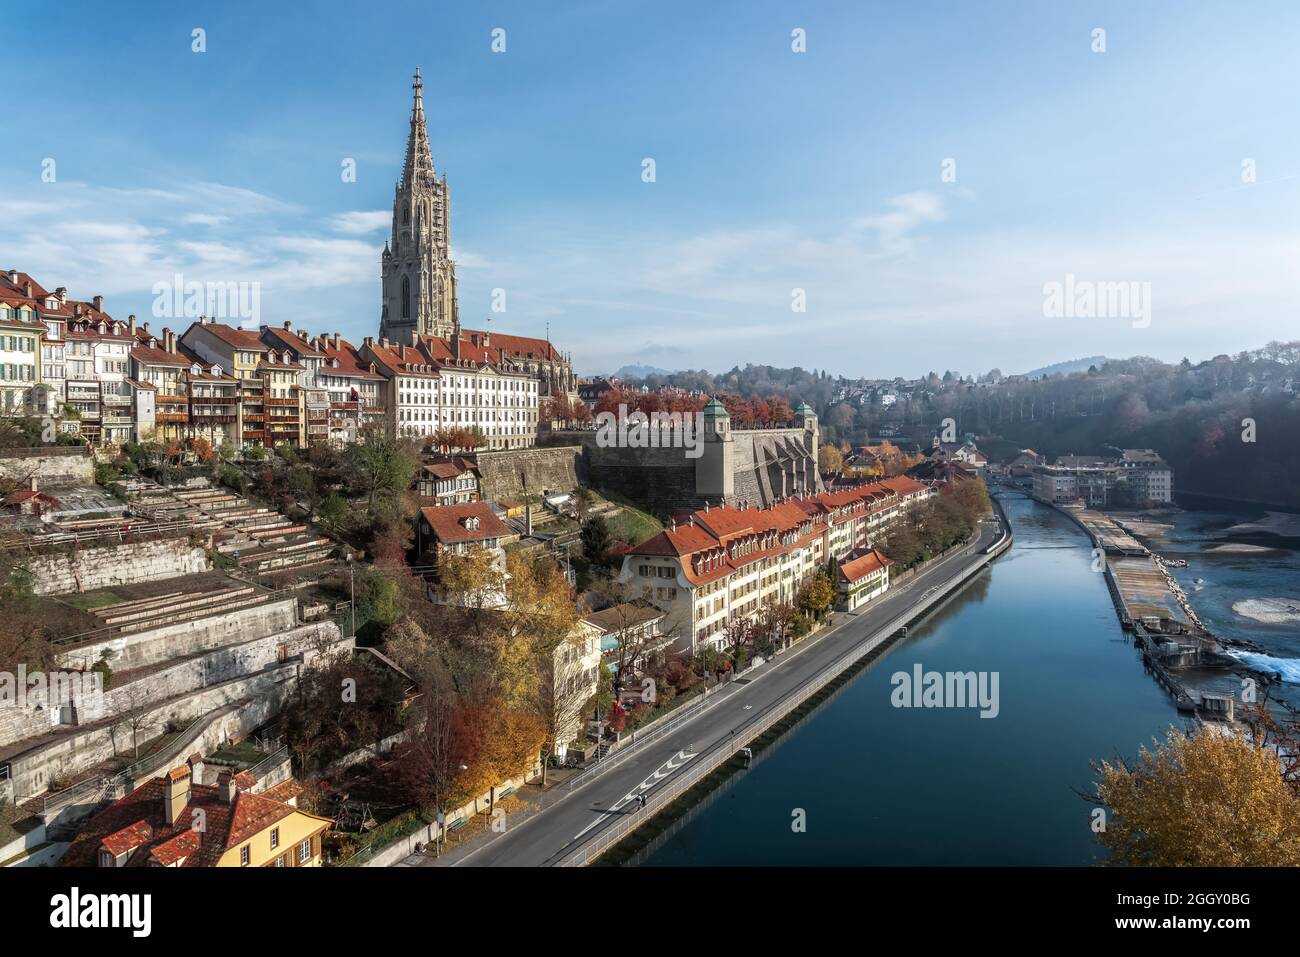 Blick auf Bern mit dem Berner Münster und der Aare - Bern, Schweiz Stockfoto